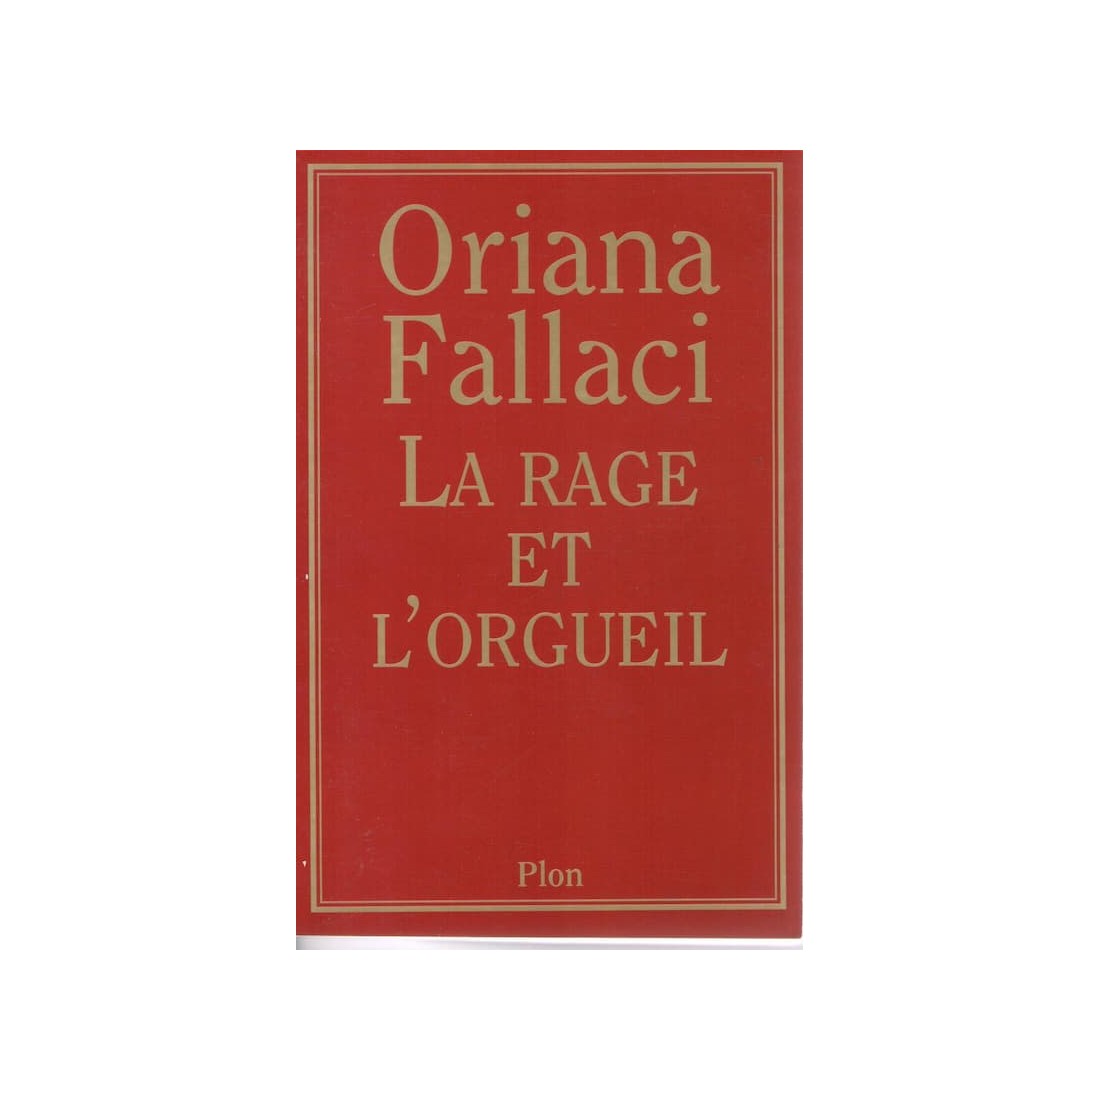 La rage et l'orgueil - Roman de Oriana Fallaci - Ocazlivres.com